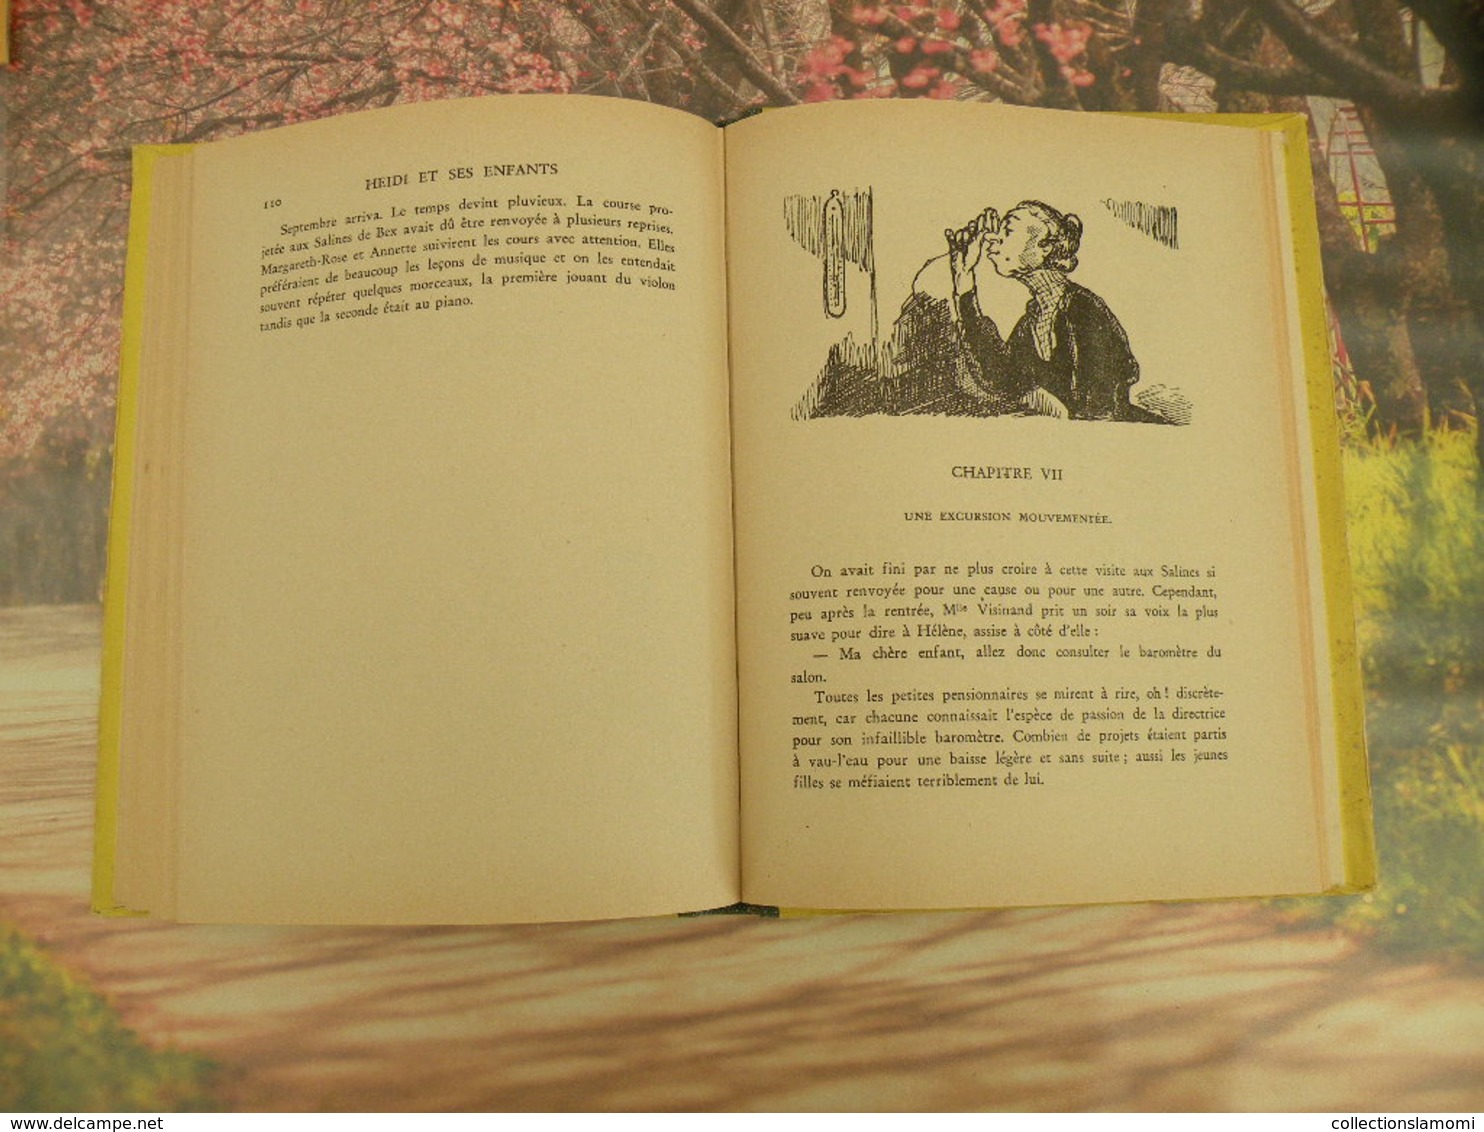 Flammarion > HEIDI ET SES ENFANTS > JOHANNA SPYRI - 1950 - 152 pages